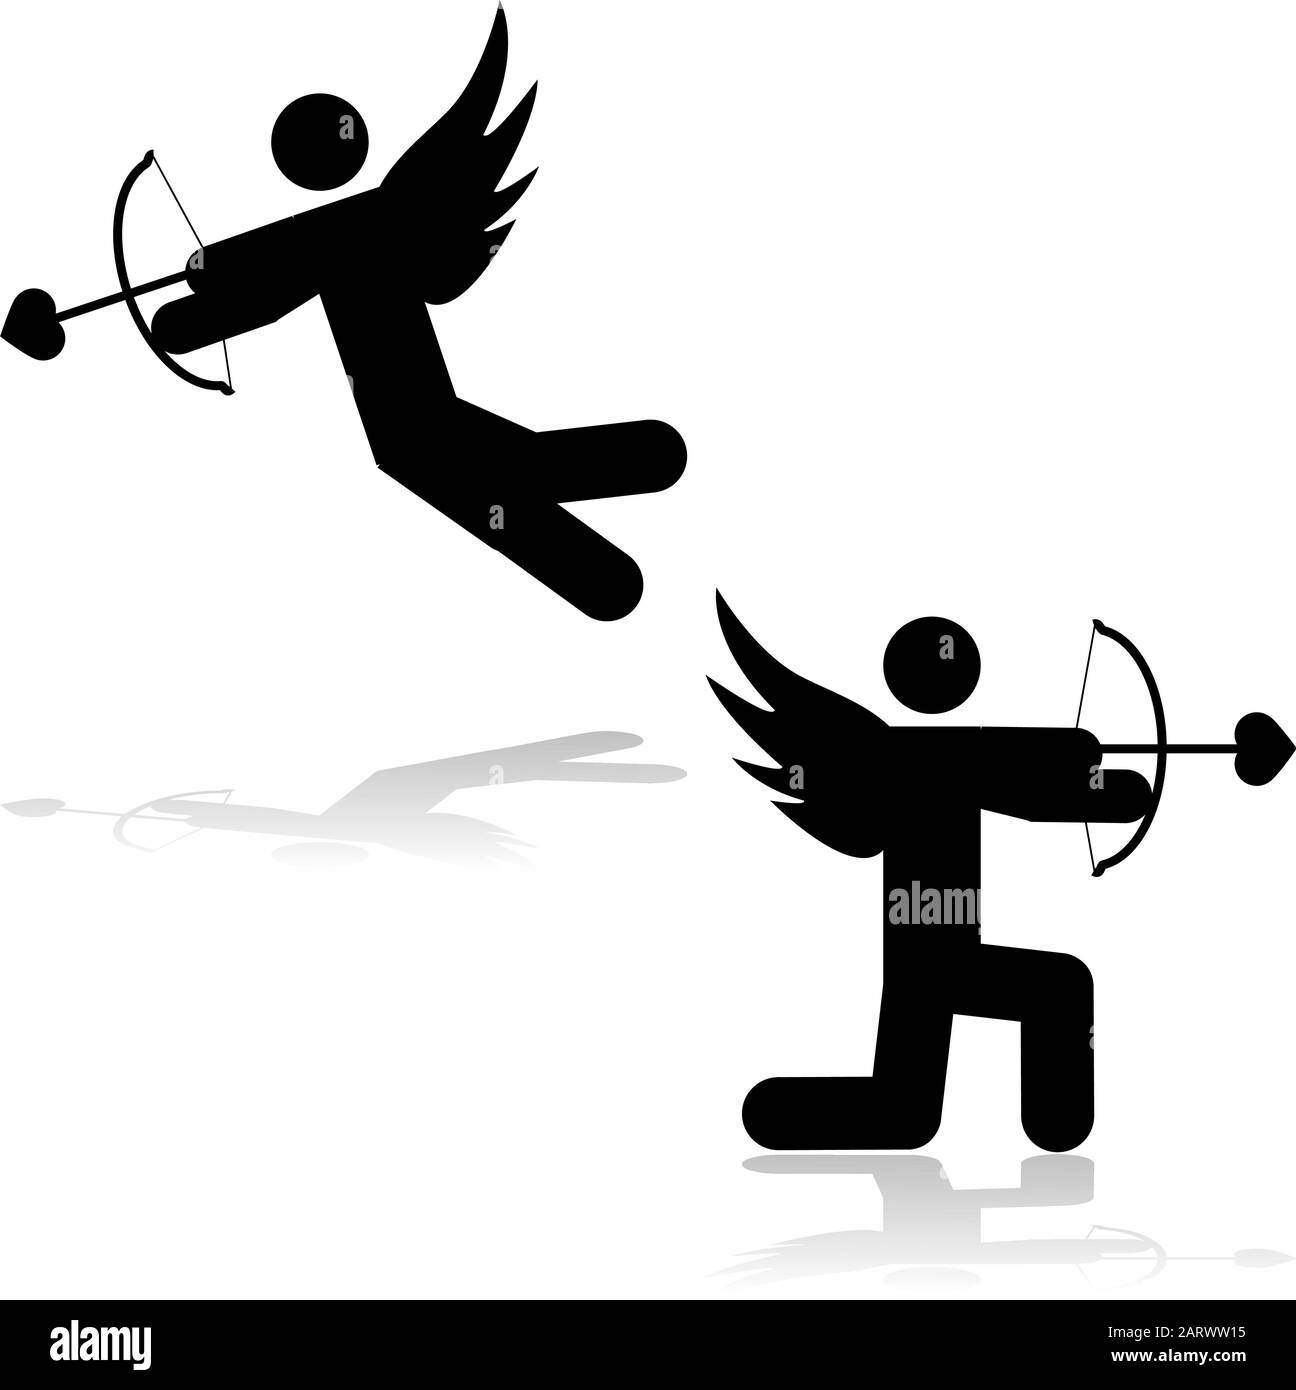 Illustration montrant une icône cupid stick figure visant une flèche avec une pointe en forme de cœur Illustration de Vecteur